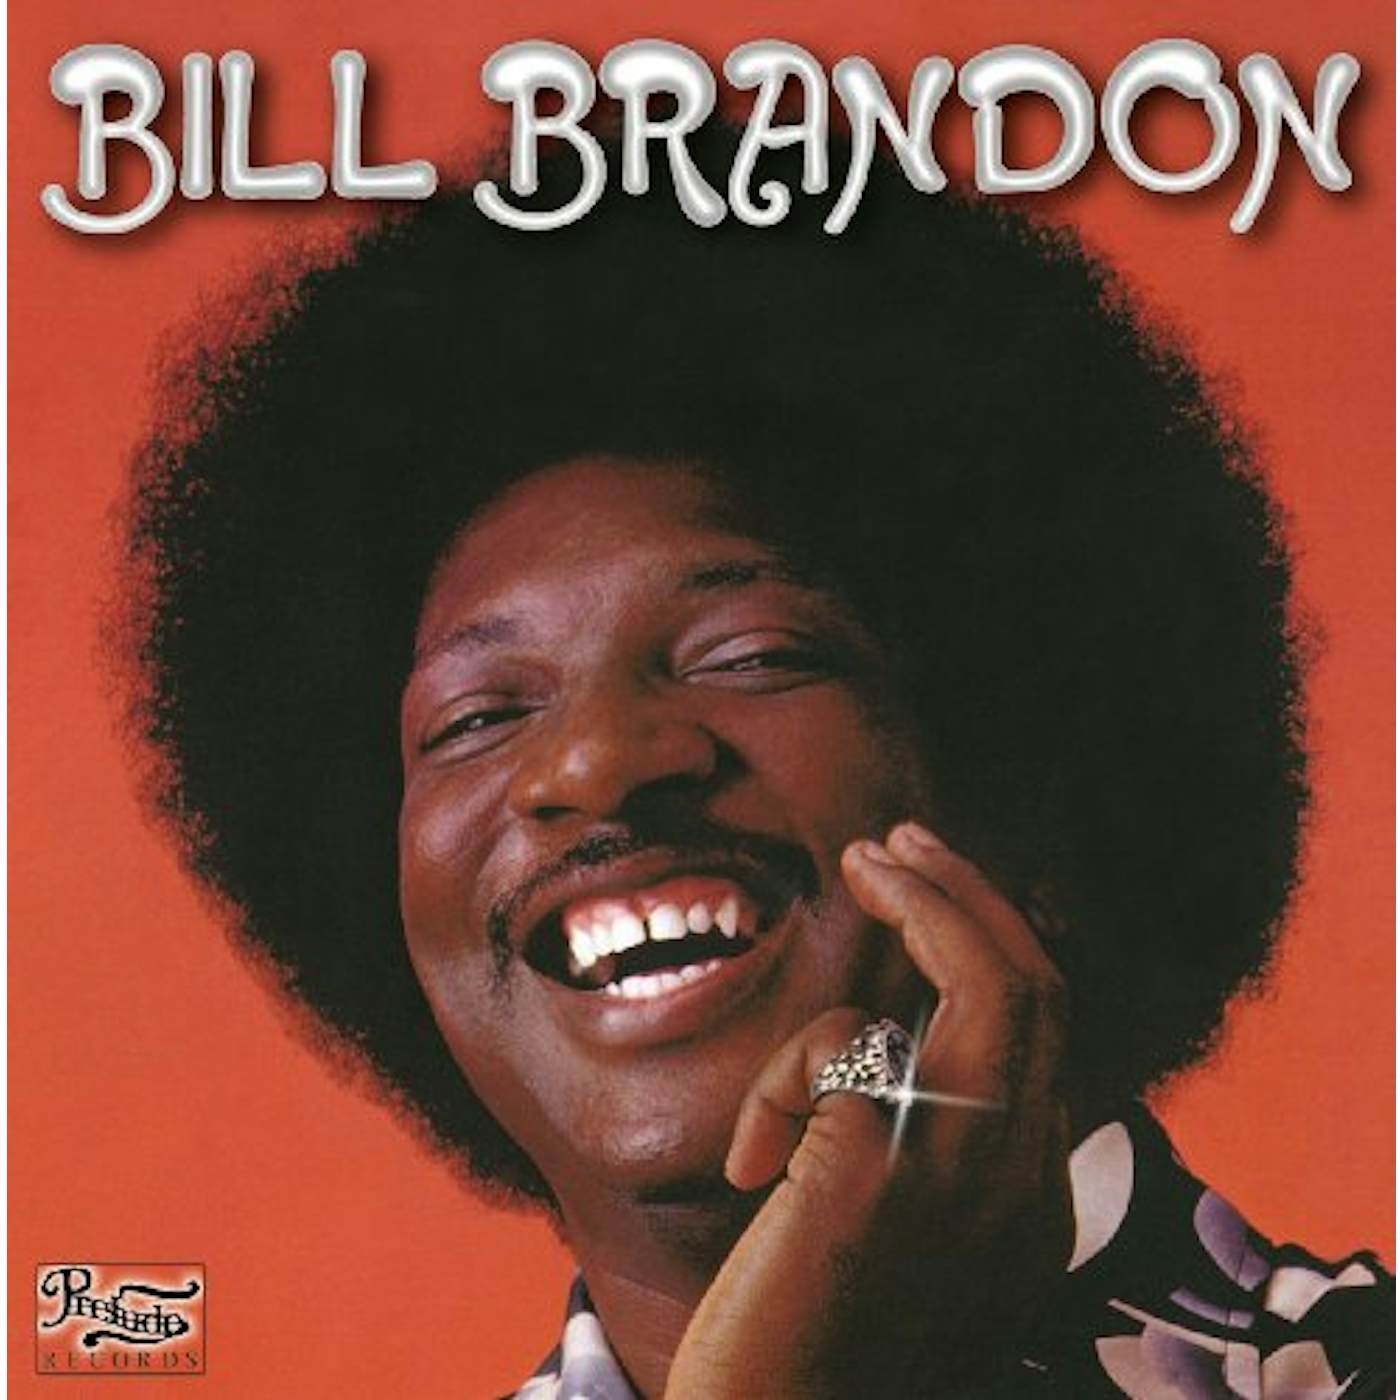 BILL BRANDON CD